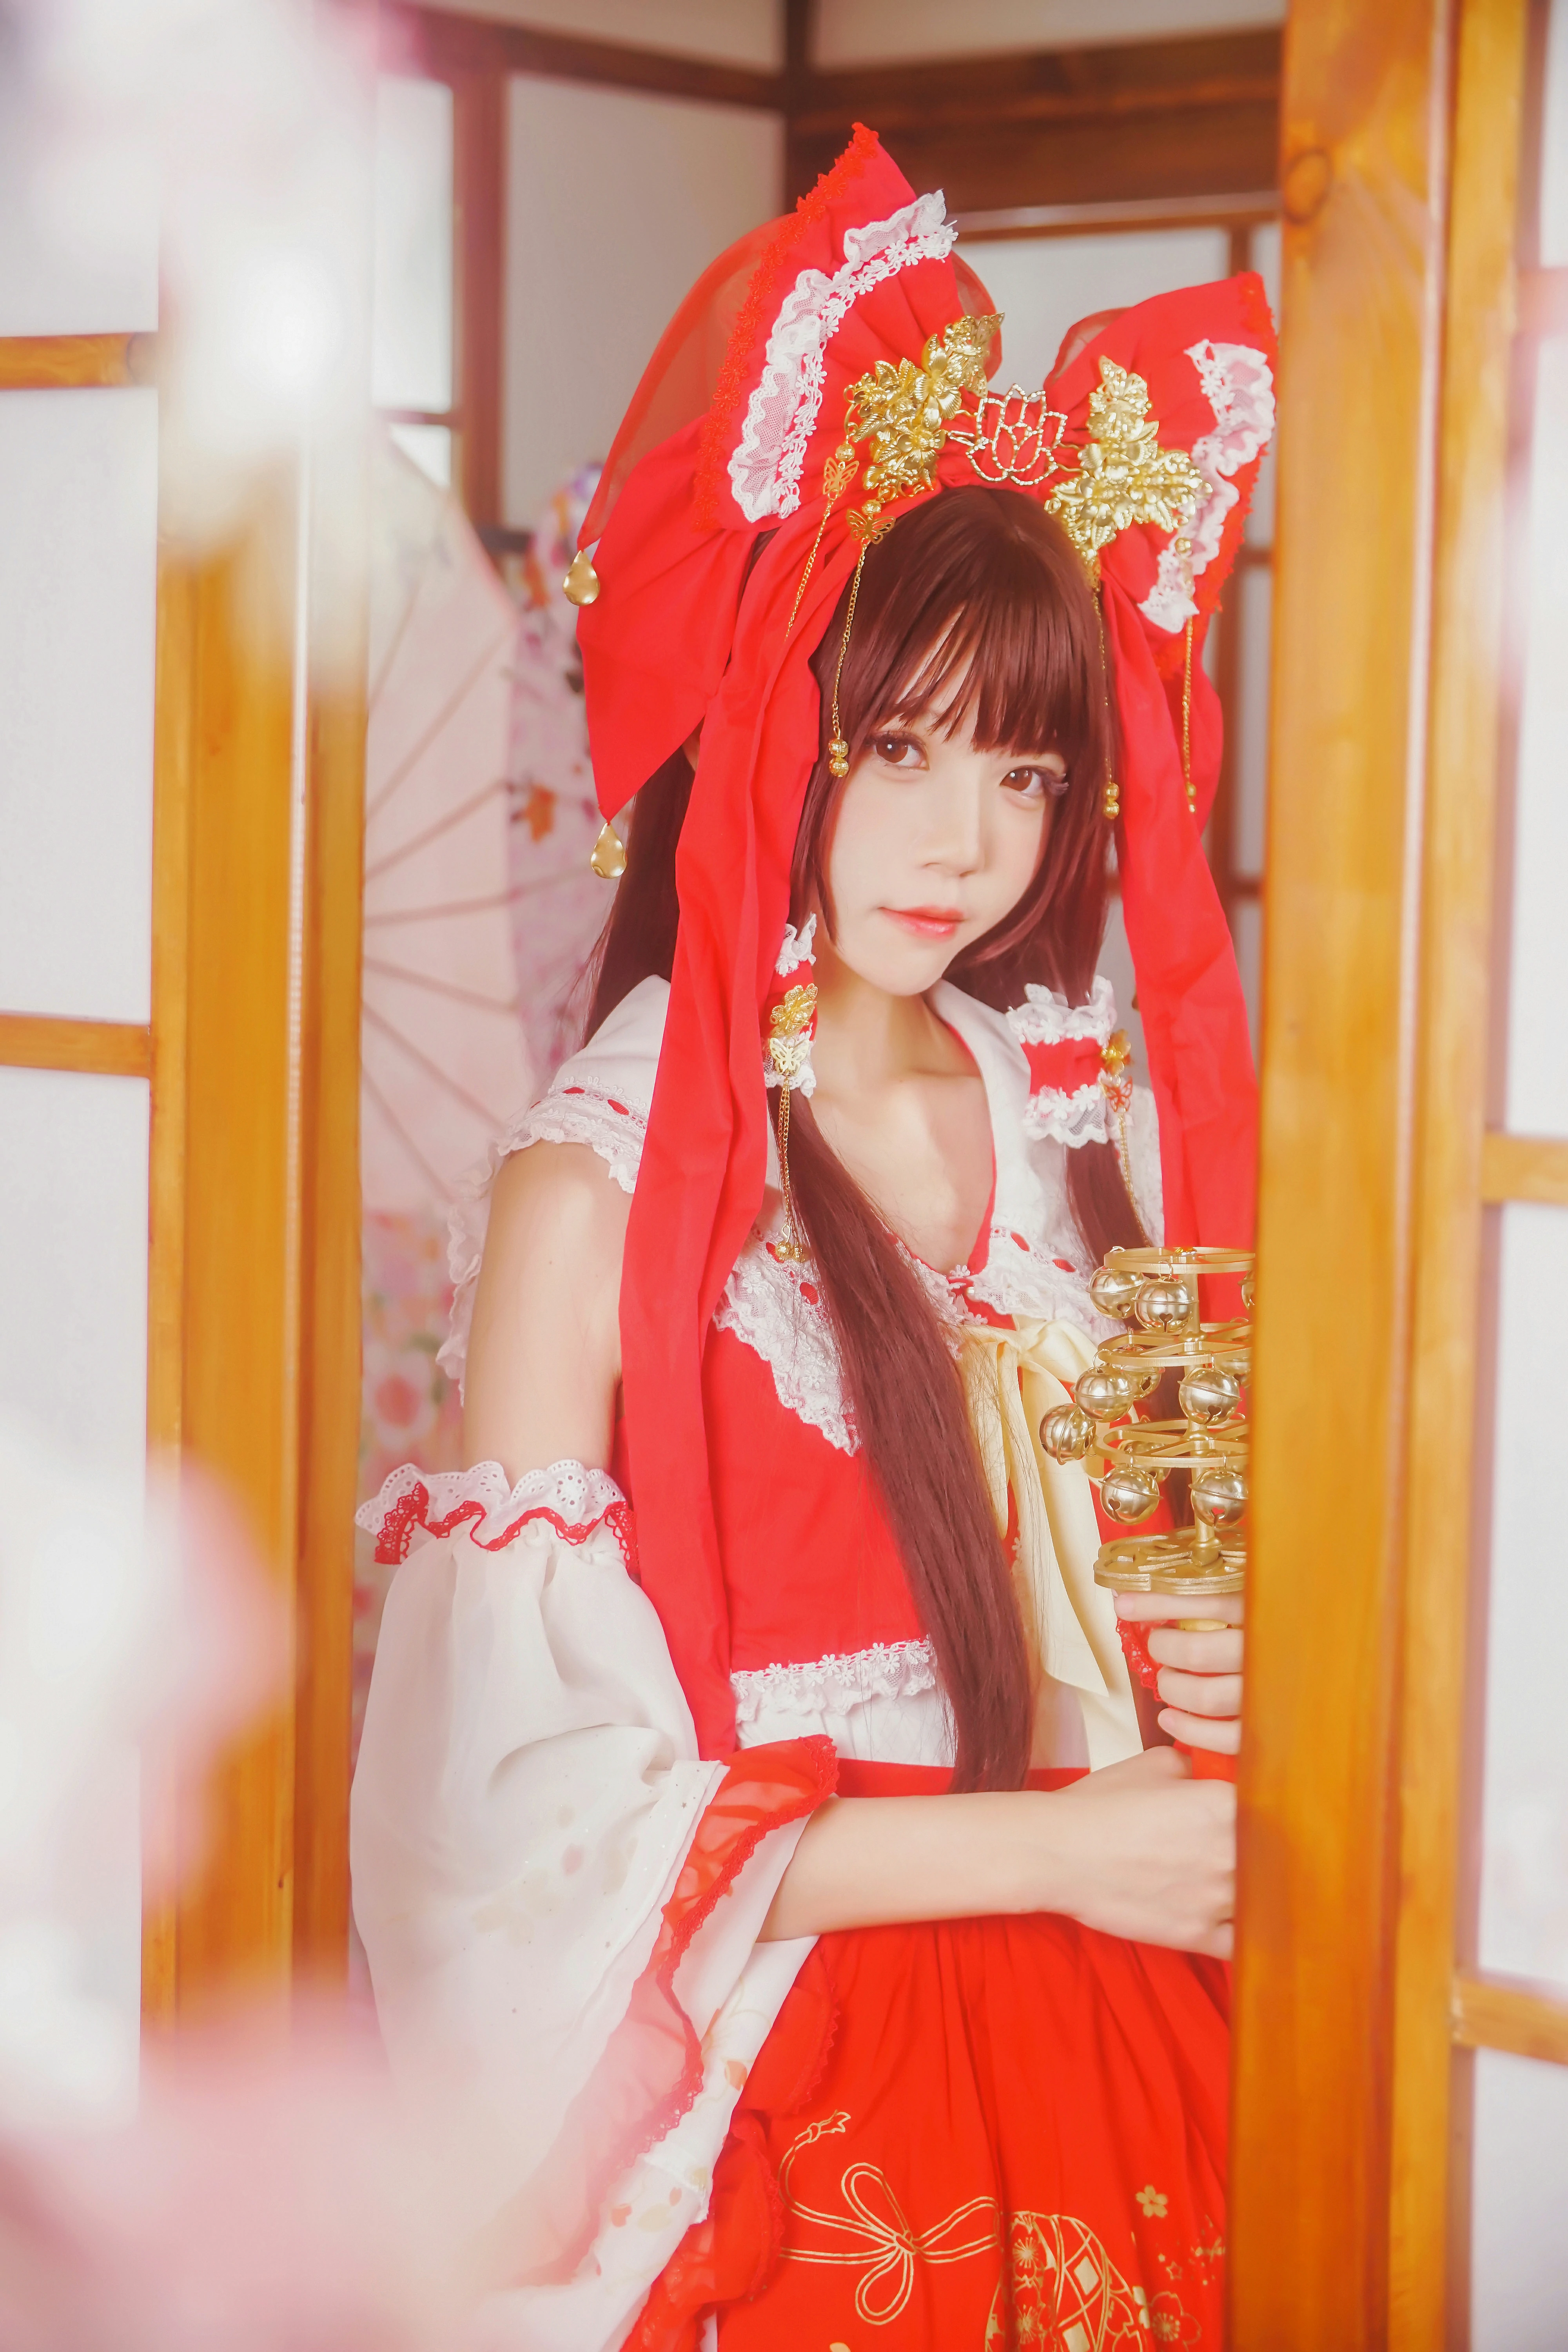 清纯少女小萝莉 桜桃喵 红色连身制服裙 和风写真,0010